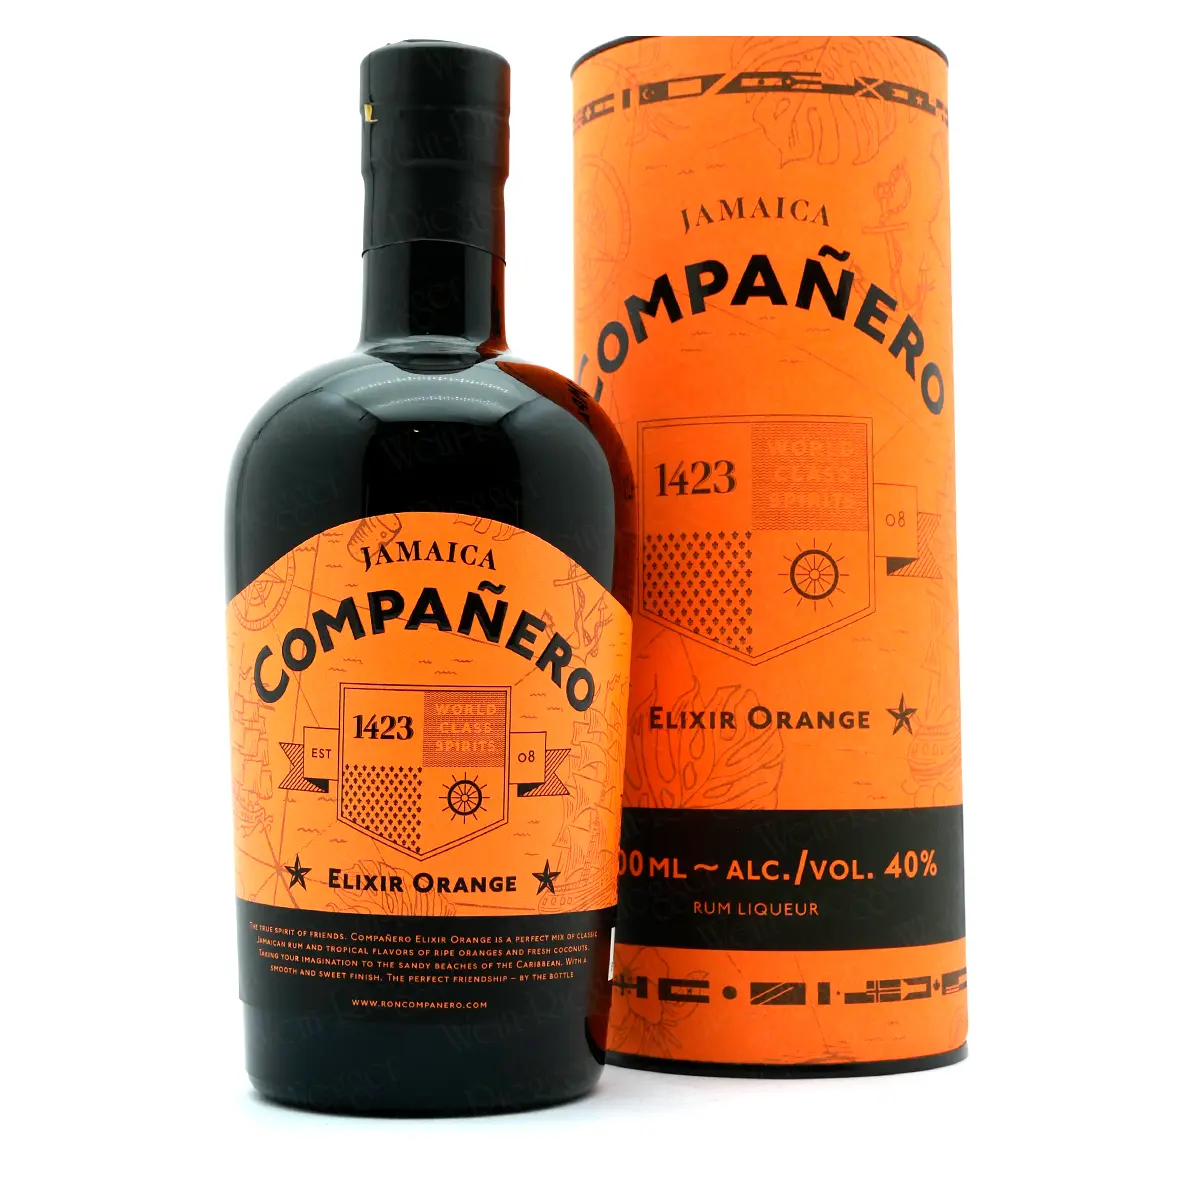 Companero | Jamaica Elixir Orange (Rum-Basis)